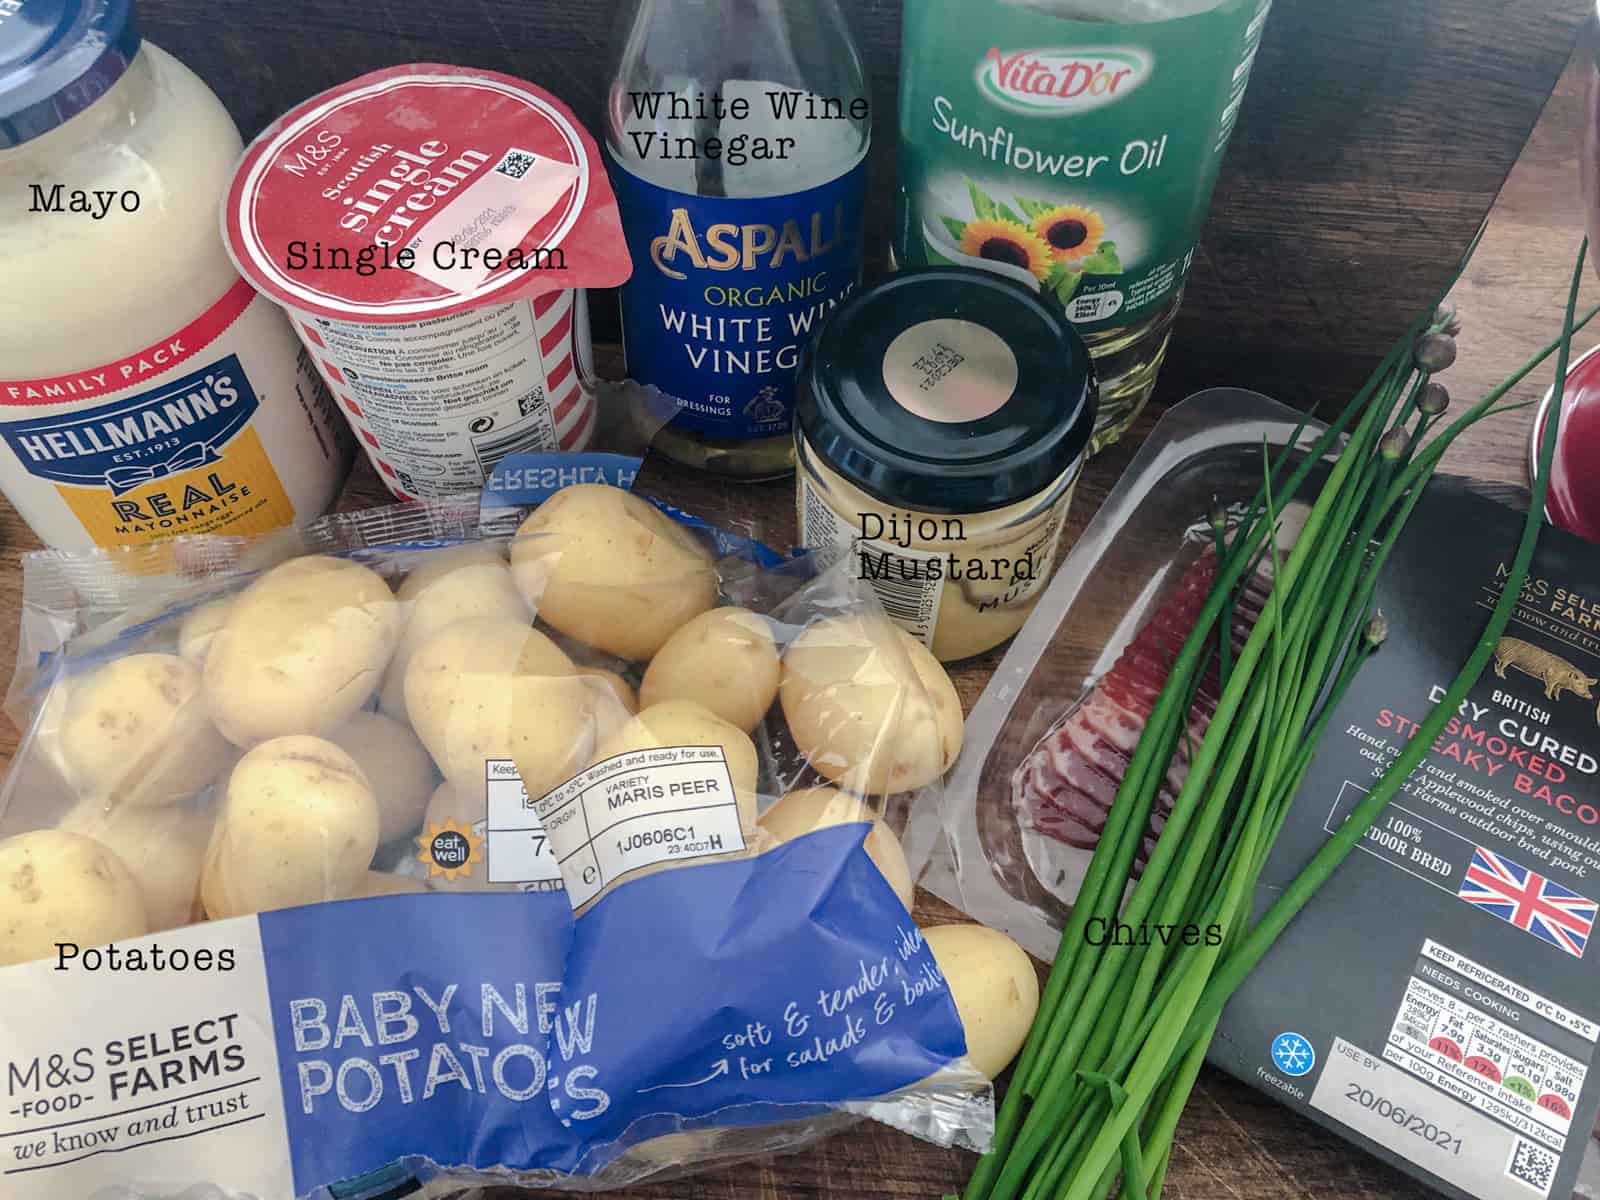 Ingredients for making potato salad.